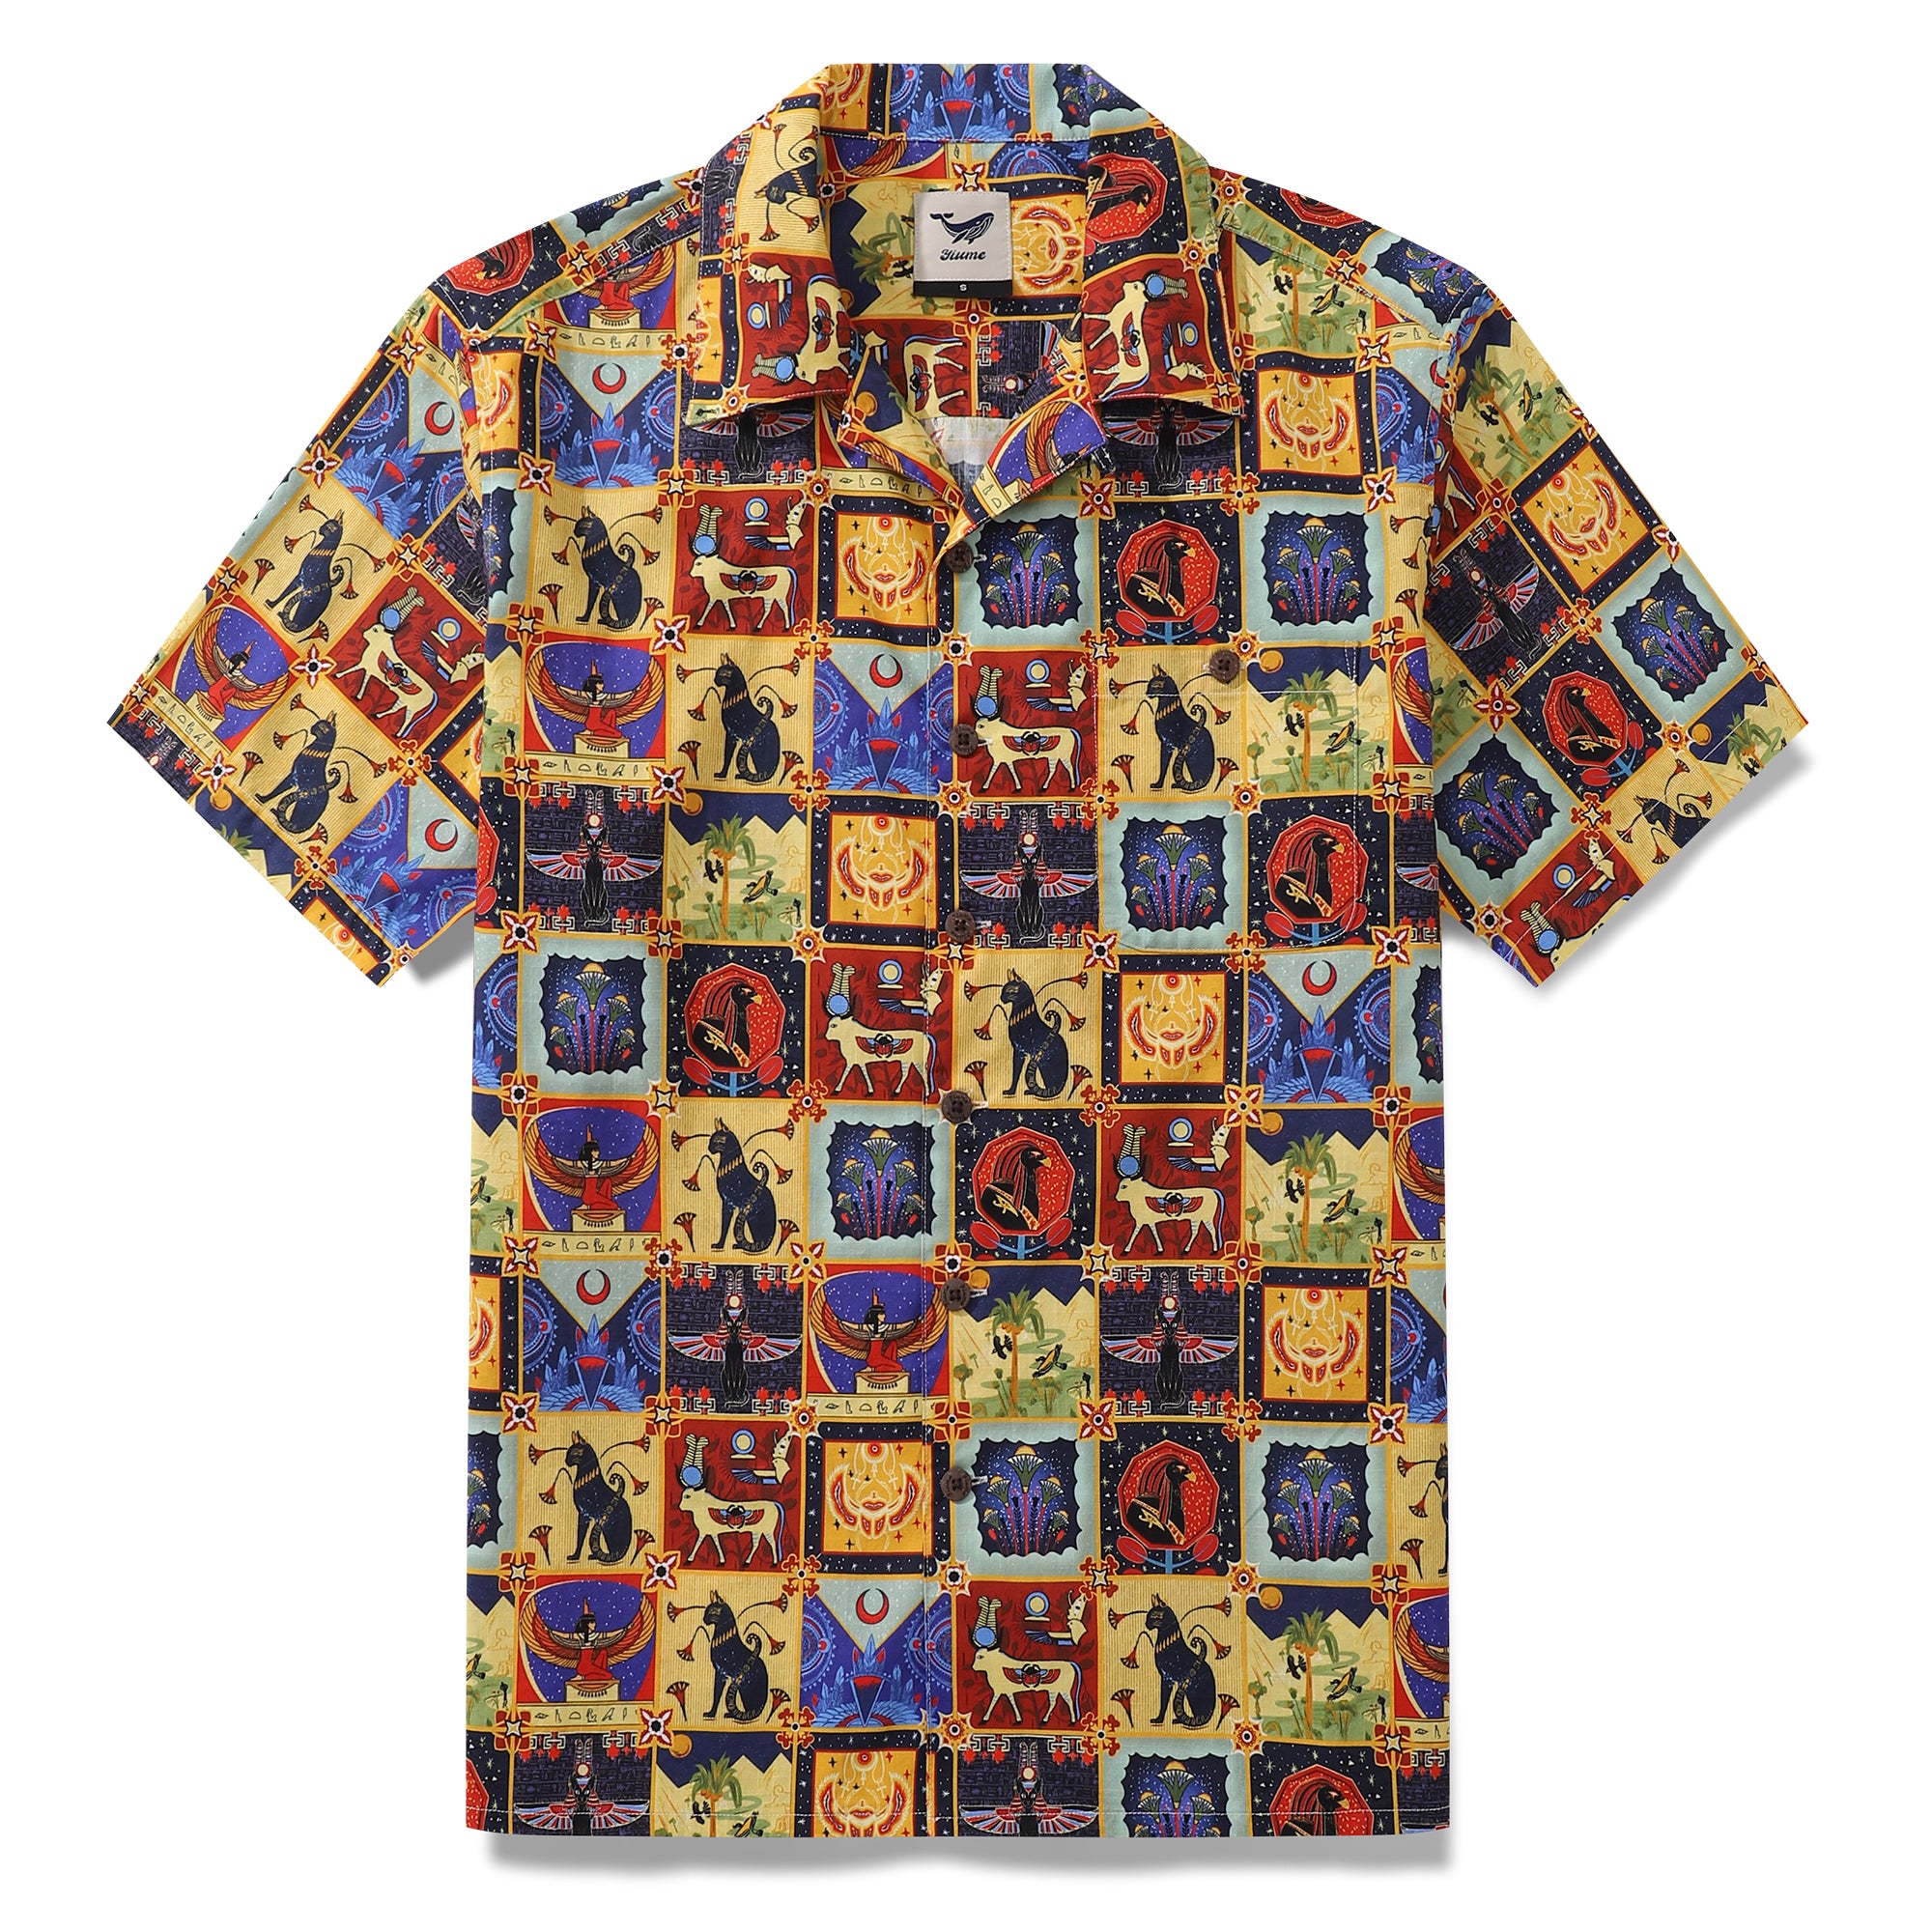 1940s Vintage Hawaiian Shirt For Men Ancient Egyptian Totem Shirt Camp Collar 100% Cotton